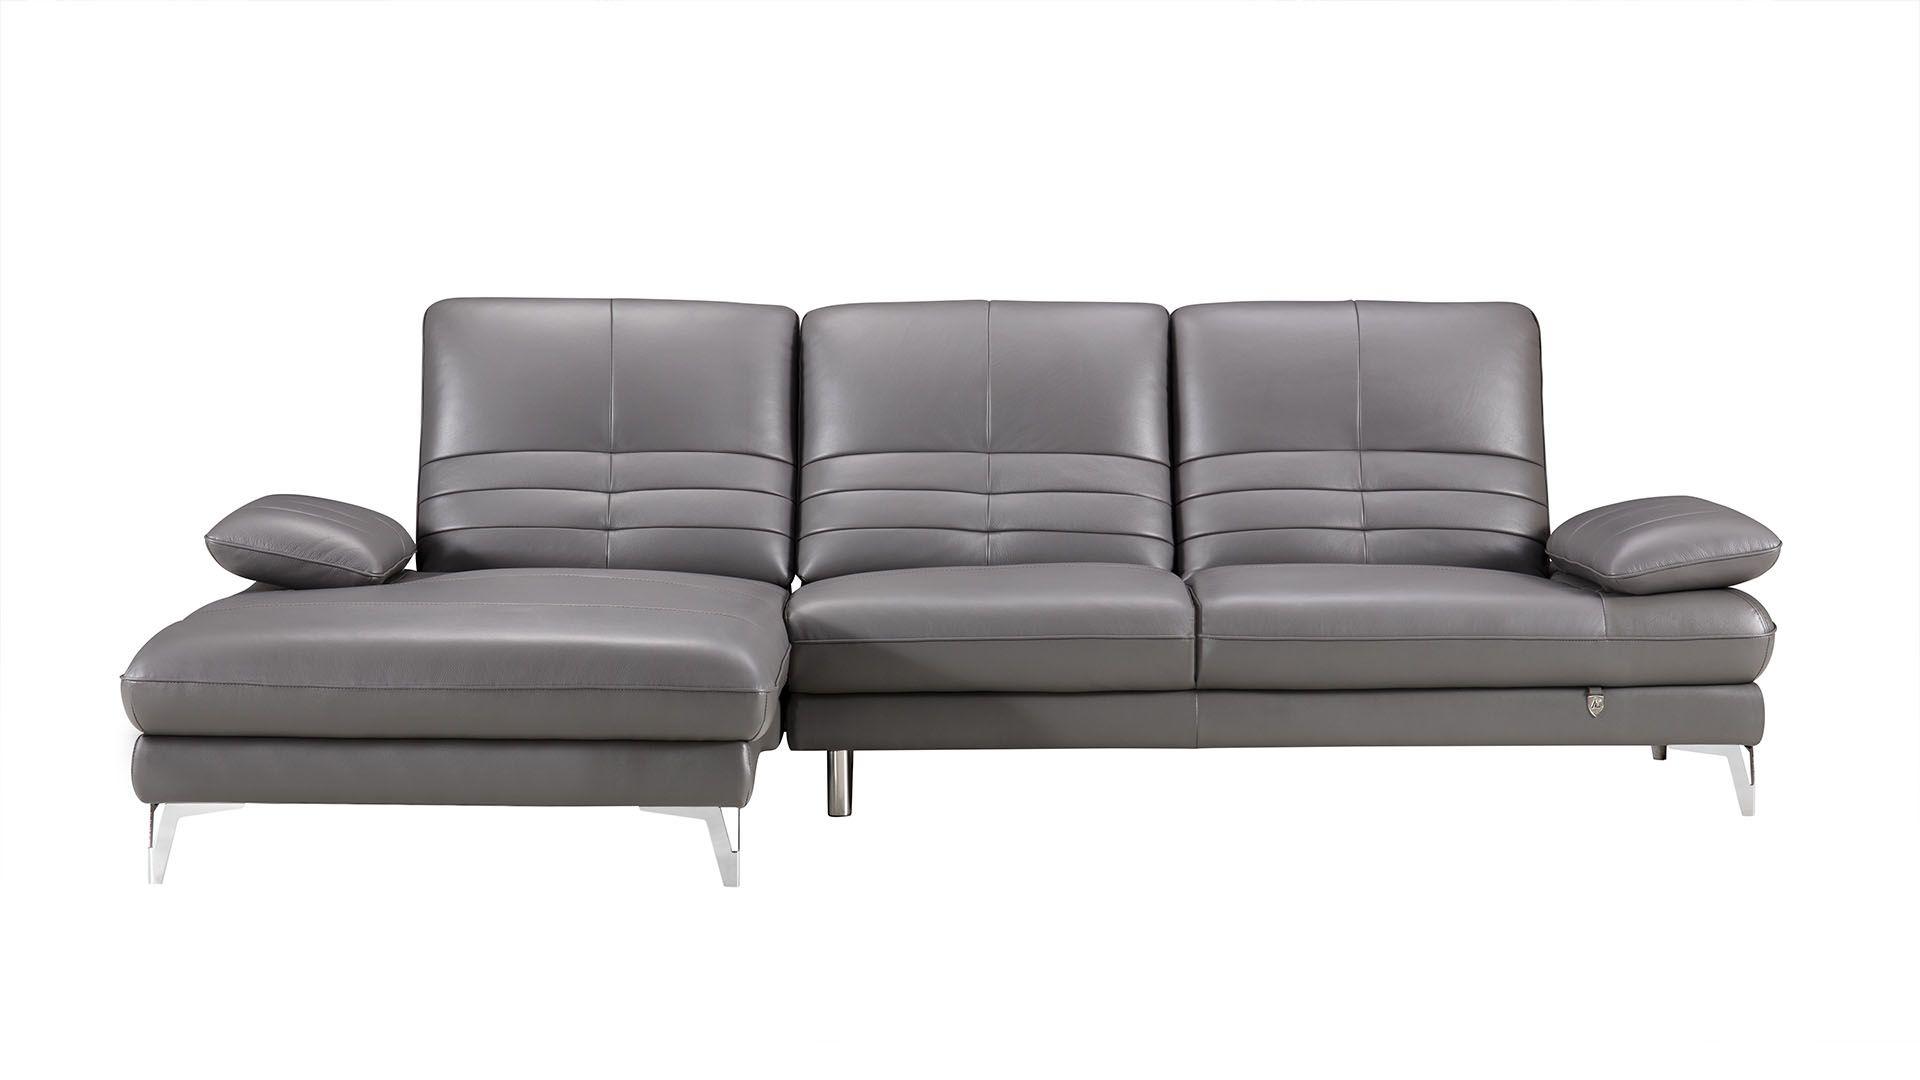 Contemporary, Modern Sectional Sofa EK-L070R-GR EK-L070R-GR in Gray Italian Leather